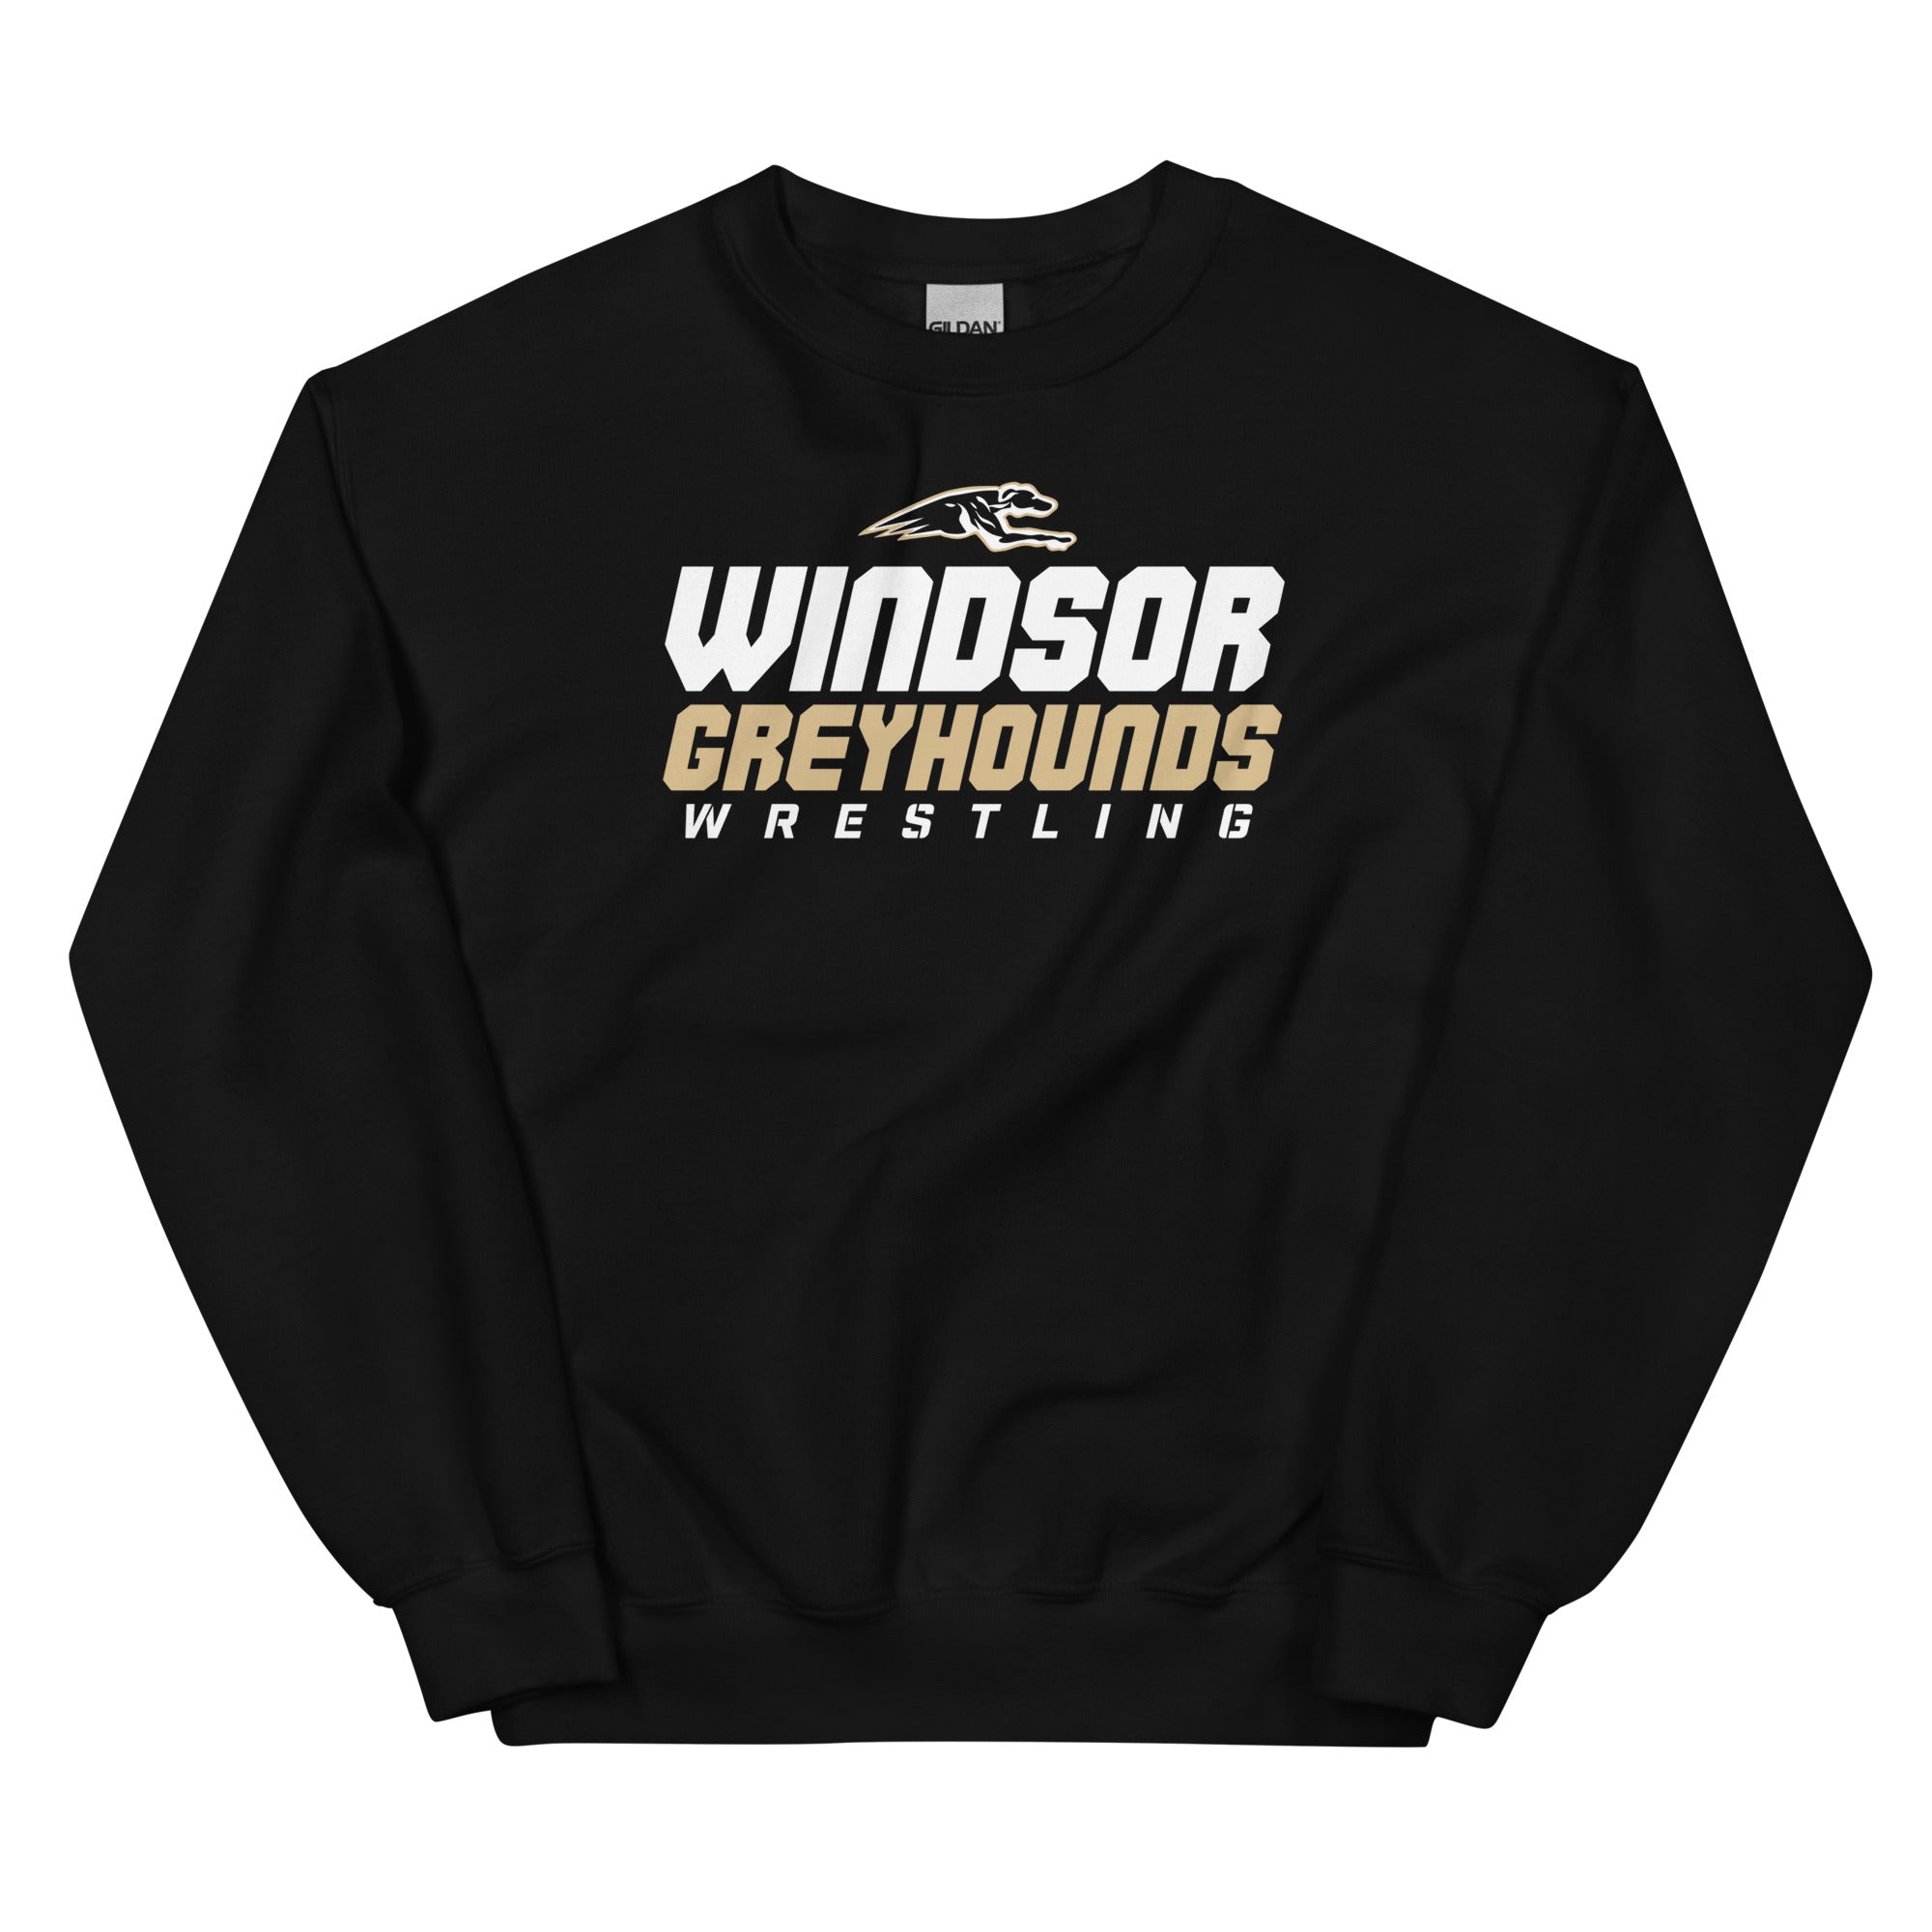 Windsor High School Unisex Crew Neck Sweatshirt